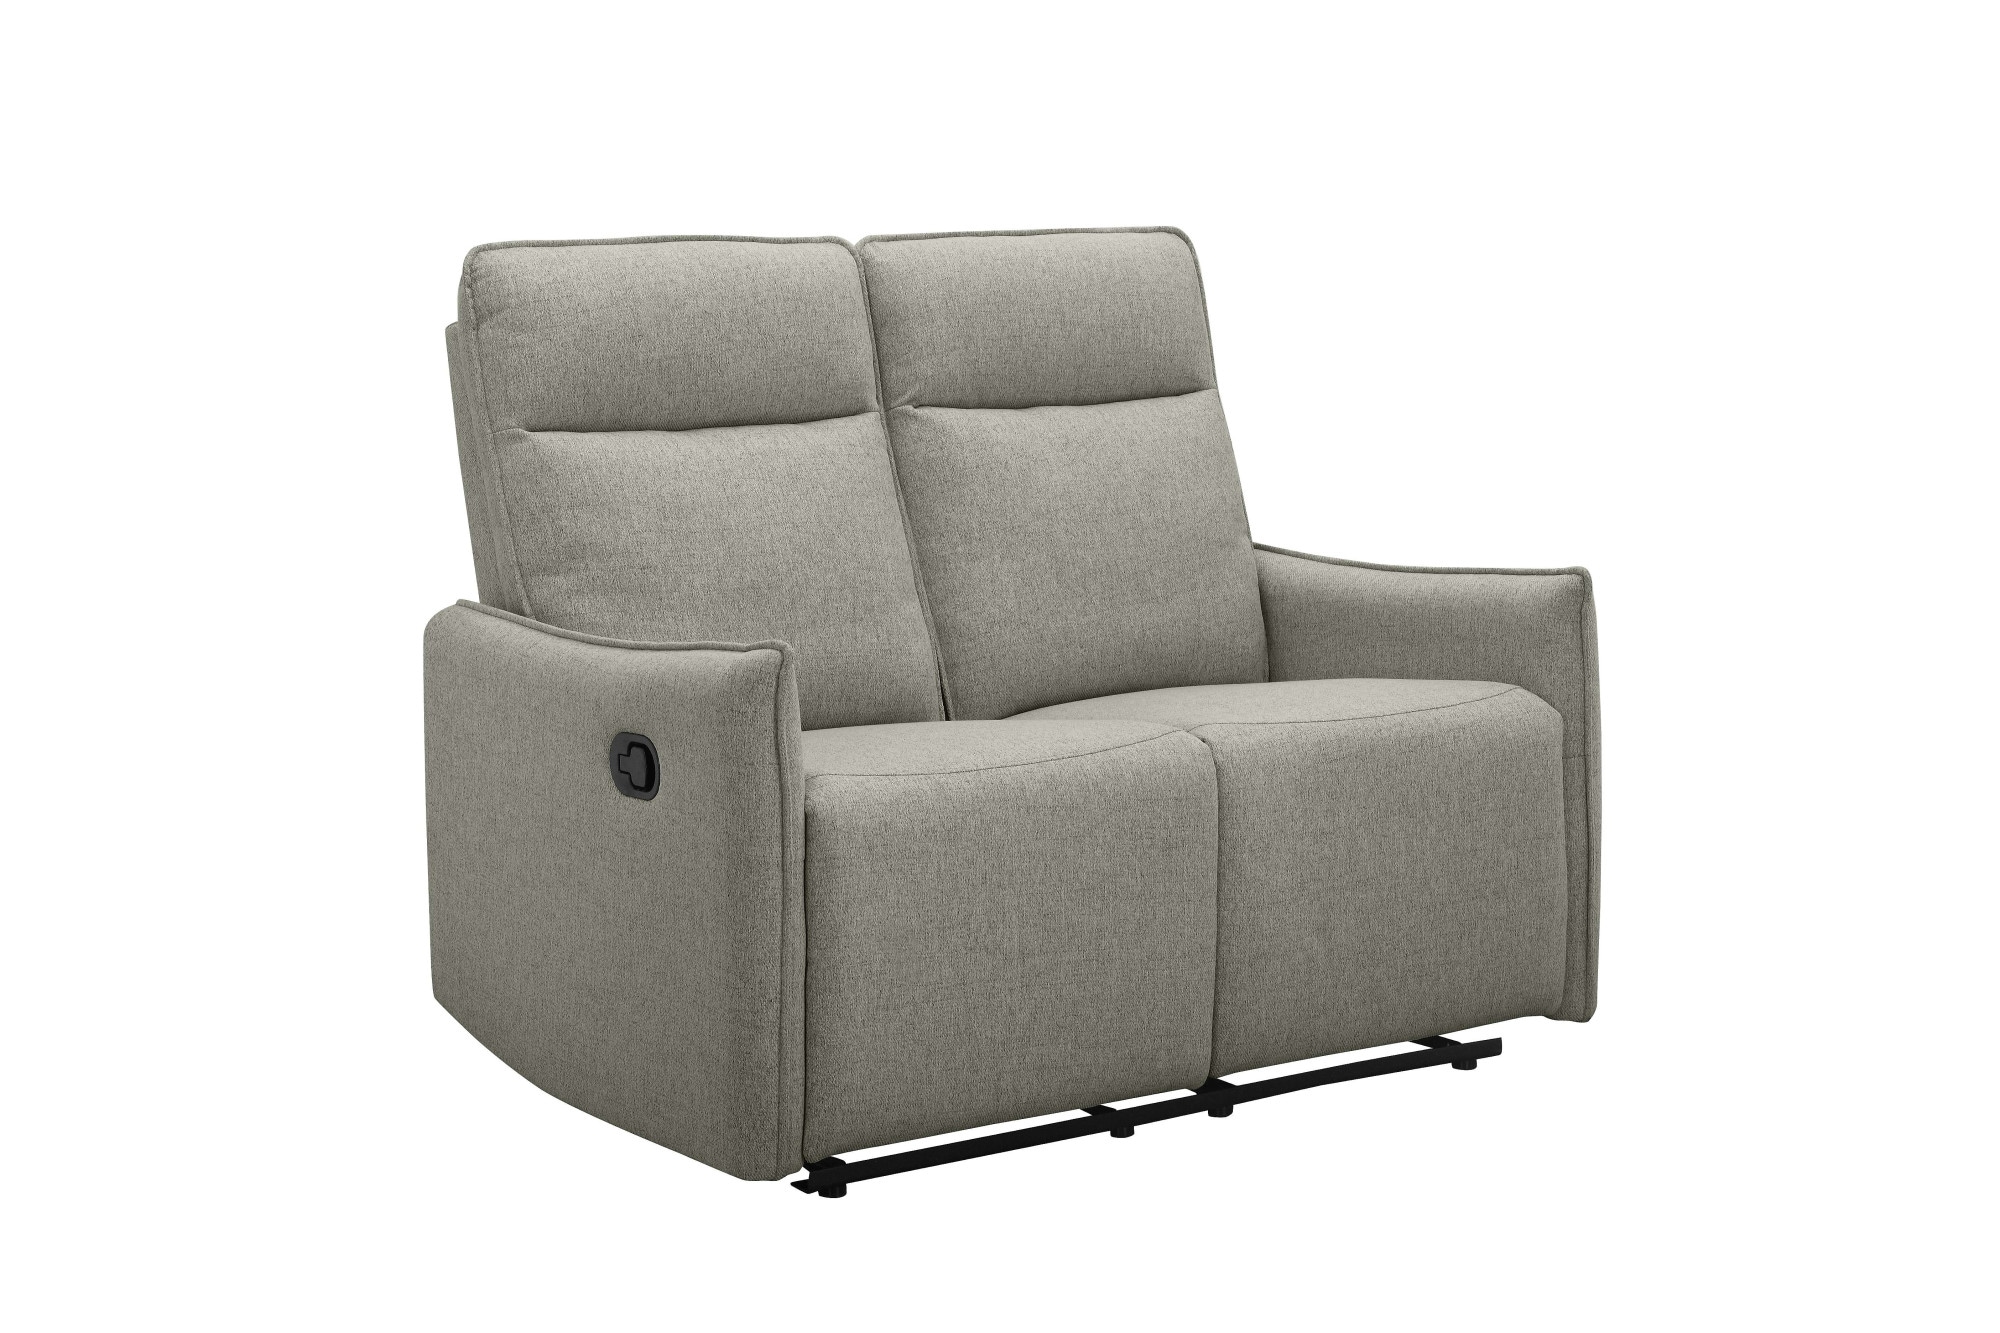 Dorel Home 2-Sitzer »Lugo, Kinosofa mit Reclinerfunktion in Kunstleder und Webstoff«, mit manueller Relaxfunktion in beiden Sitzen